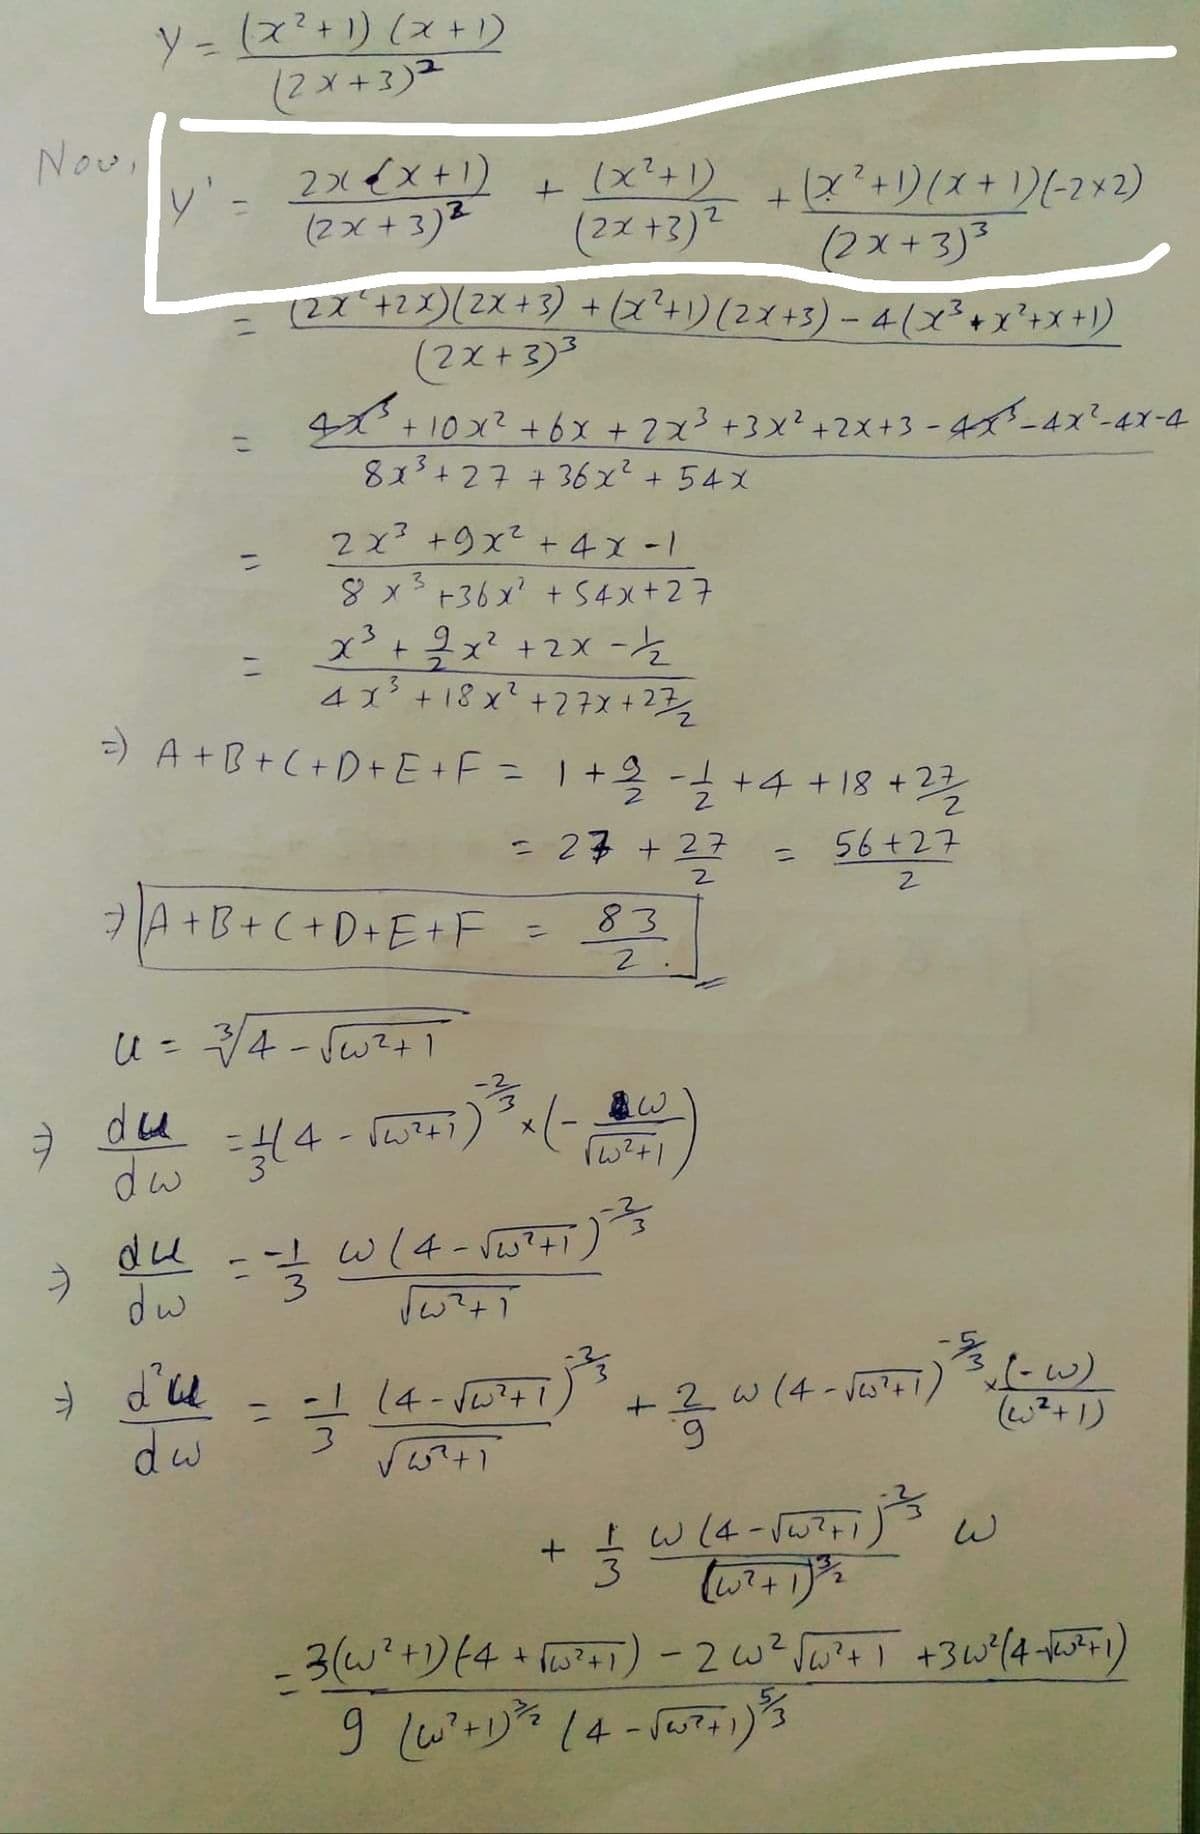 ソ- (x?+リ(ス+)
(2メ+3)2
Nov,
y- 2xイx+1)
(2x + 3)2
(x+り2+りズ+リ(-ス×2)
+(2+リ(ス+1)-2×2)
(2x+3)3
(2742x)(2x+3) +(x²+)(2x+3)-4(x3+x'+x+))
(2ズ+3)2
(2x+3)3
4ズ+10x? +6x +2x3+3x?+2X+3-4-4x'-4Y-4
こ
813+27+36x?+54X
2x? +9x2 + 4x -1
8 x3+36x? + 54x+27
2.
41+18xて+2子メ+23
2.
=) A+B+(+D+E+F=1+2 -+4 +18 +2
= 27 + 27
56+27
%3D
フA+B+C+D+E+F
83
%3D
du
dw 34-0ょう)x1-
メ
-1 w(4- Sw?+i
う
dw
du
+2 w (4- Jes?+ i)
6.
dw
2+1)
上w14-107+1)
3.
1
9 wジ14-107り
